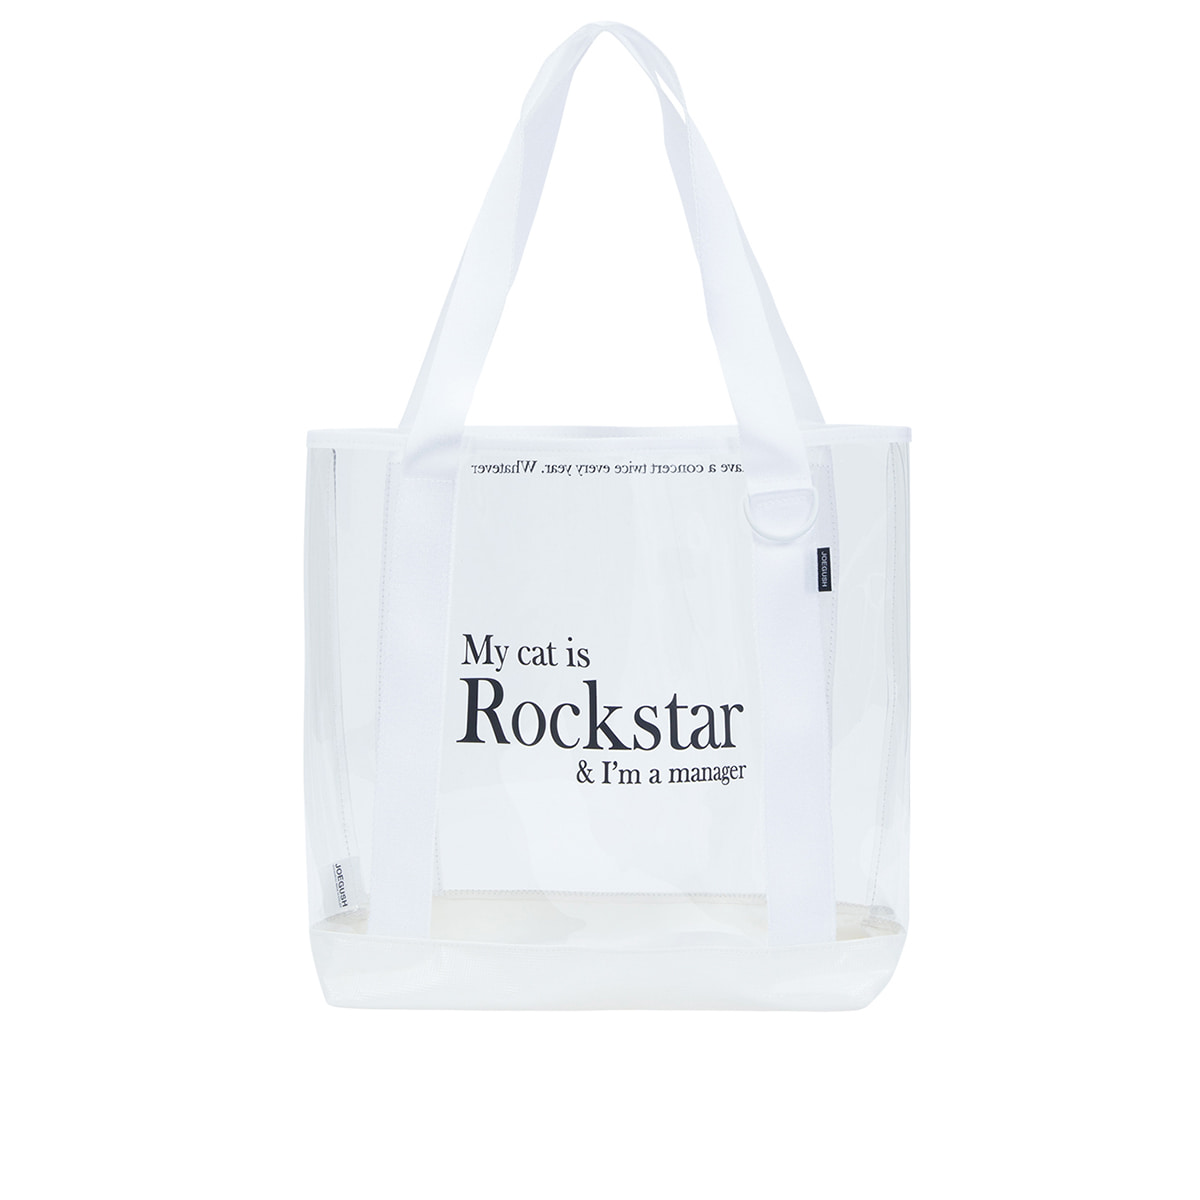 Rockstar pvc tote bag (White/Black)